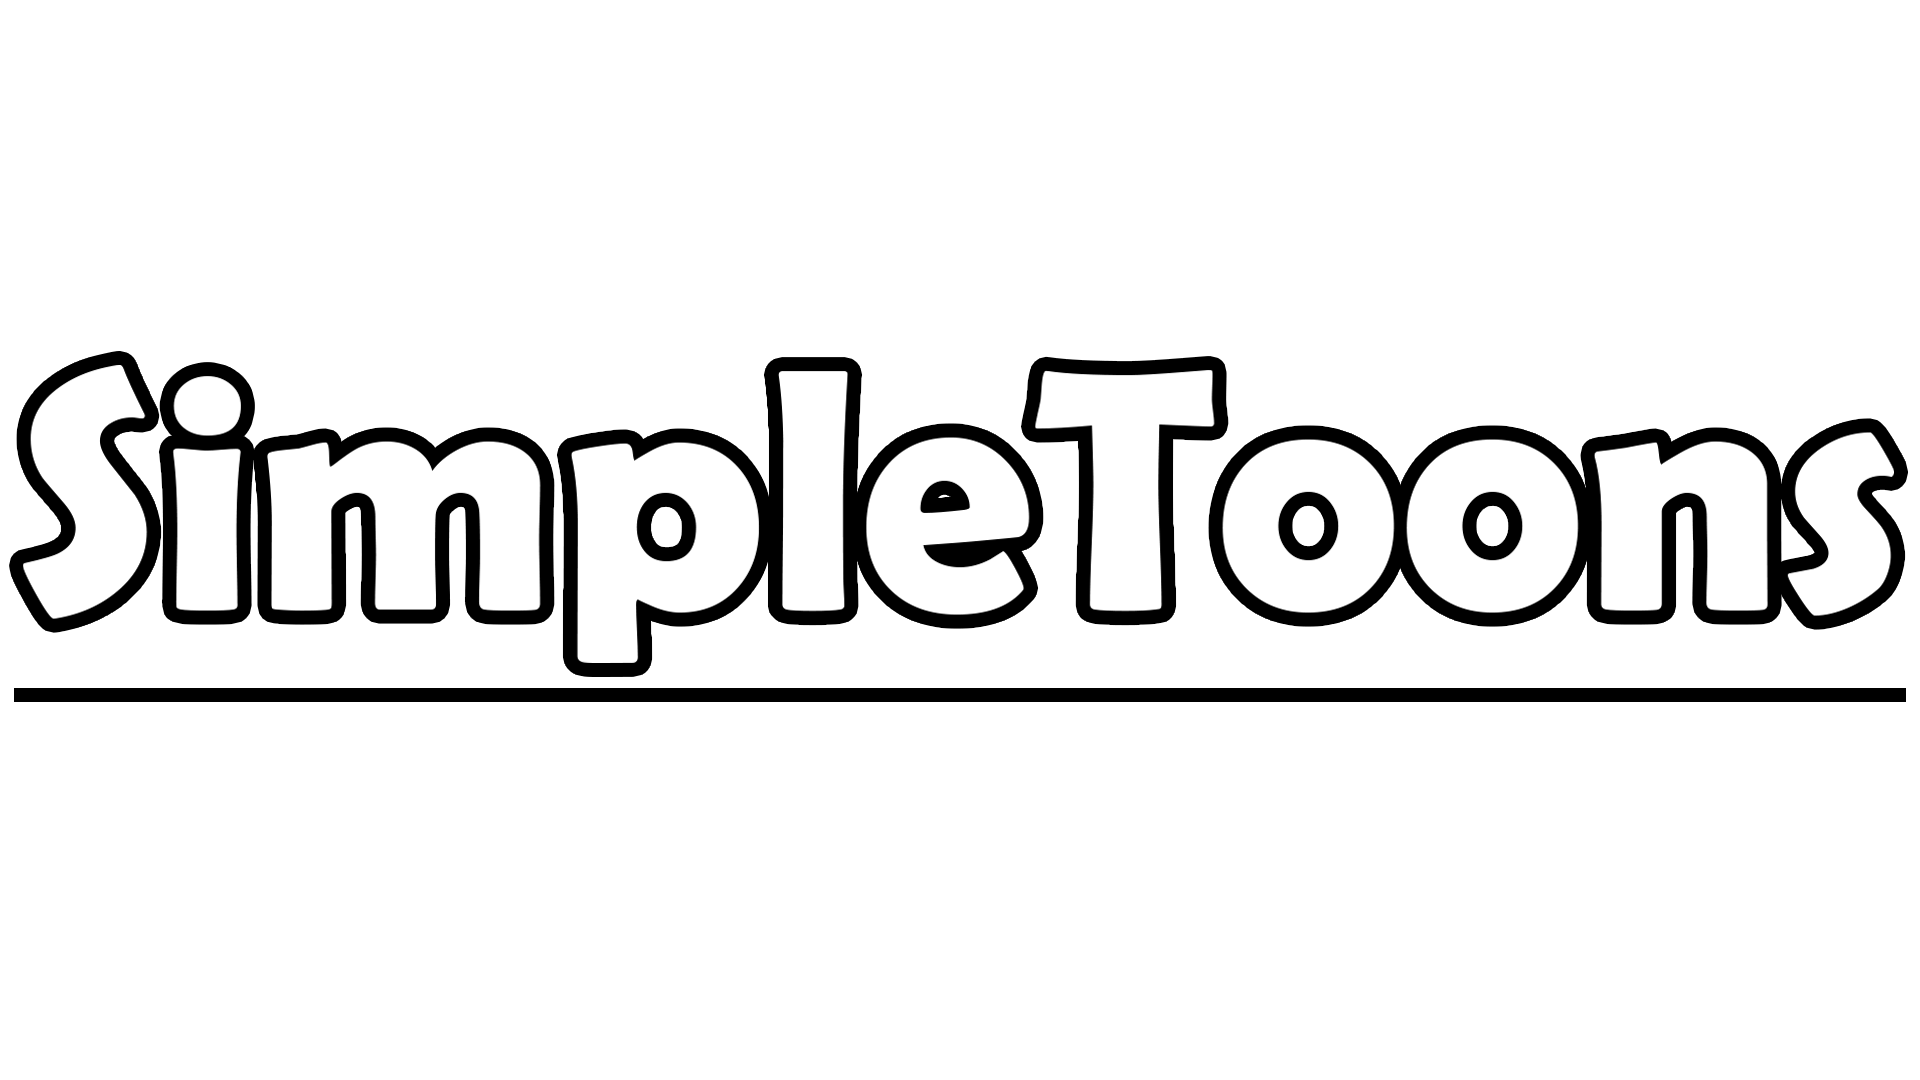 SimpleToons - Full Series